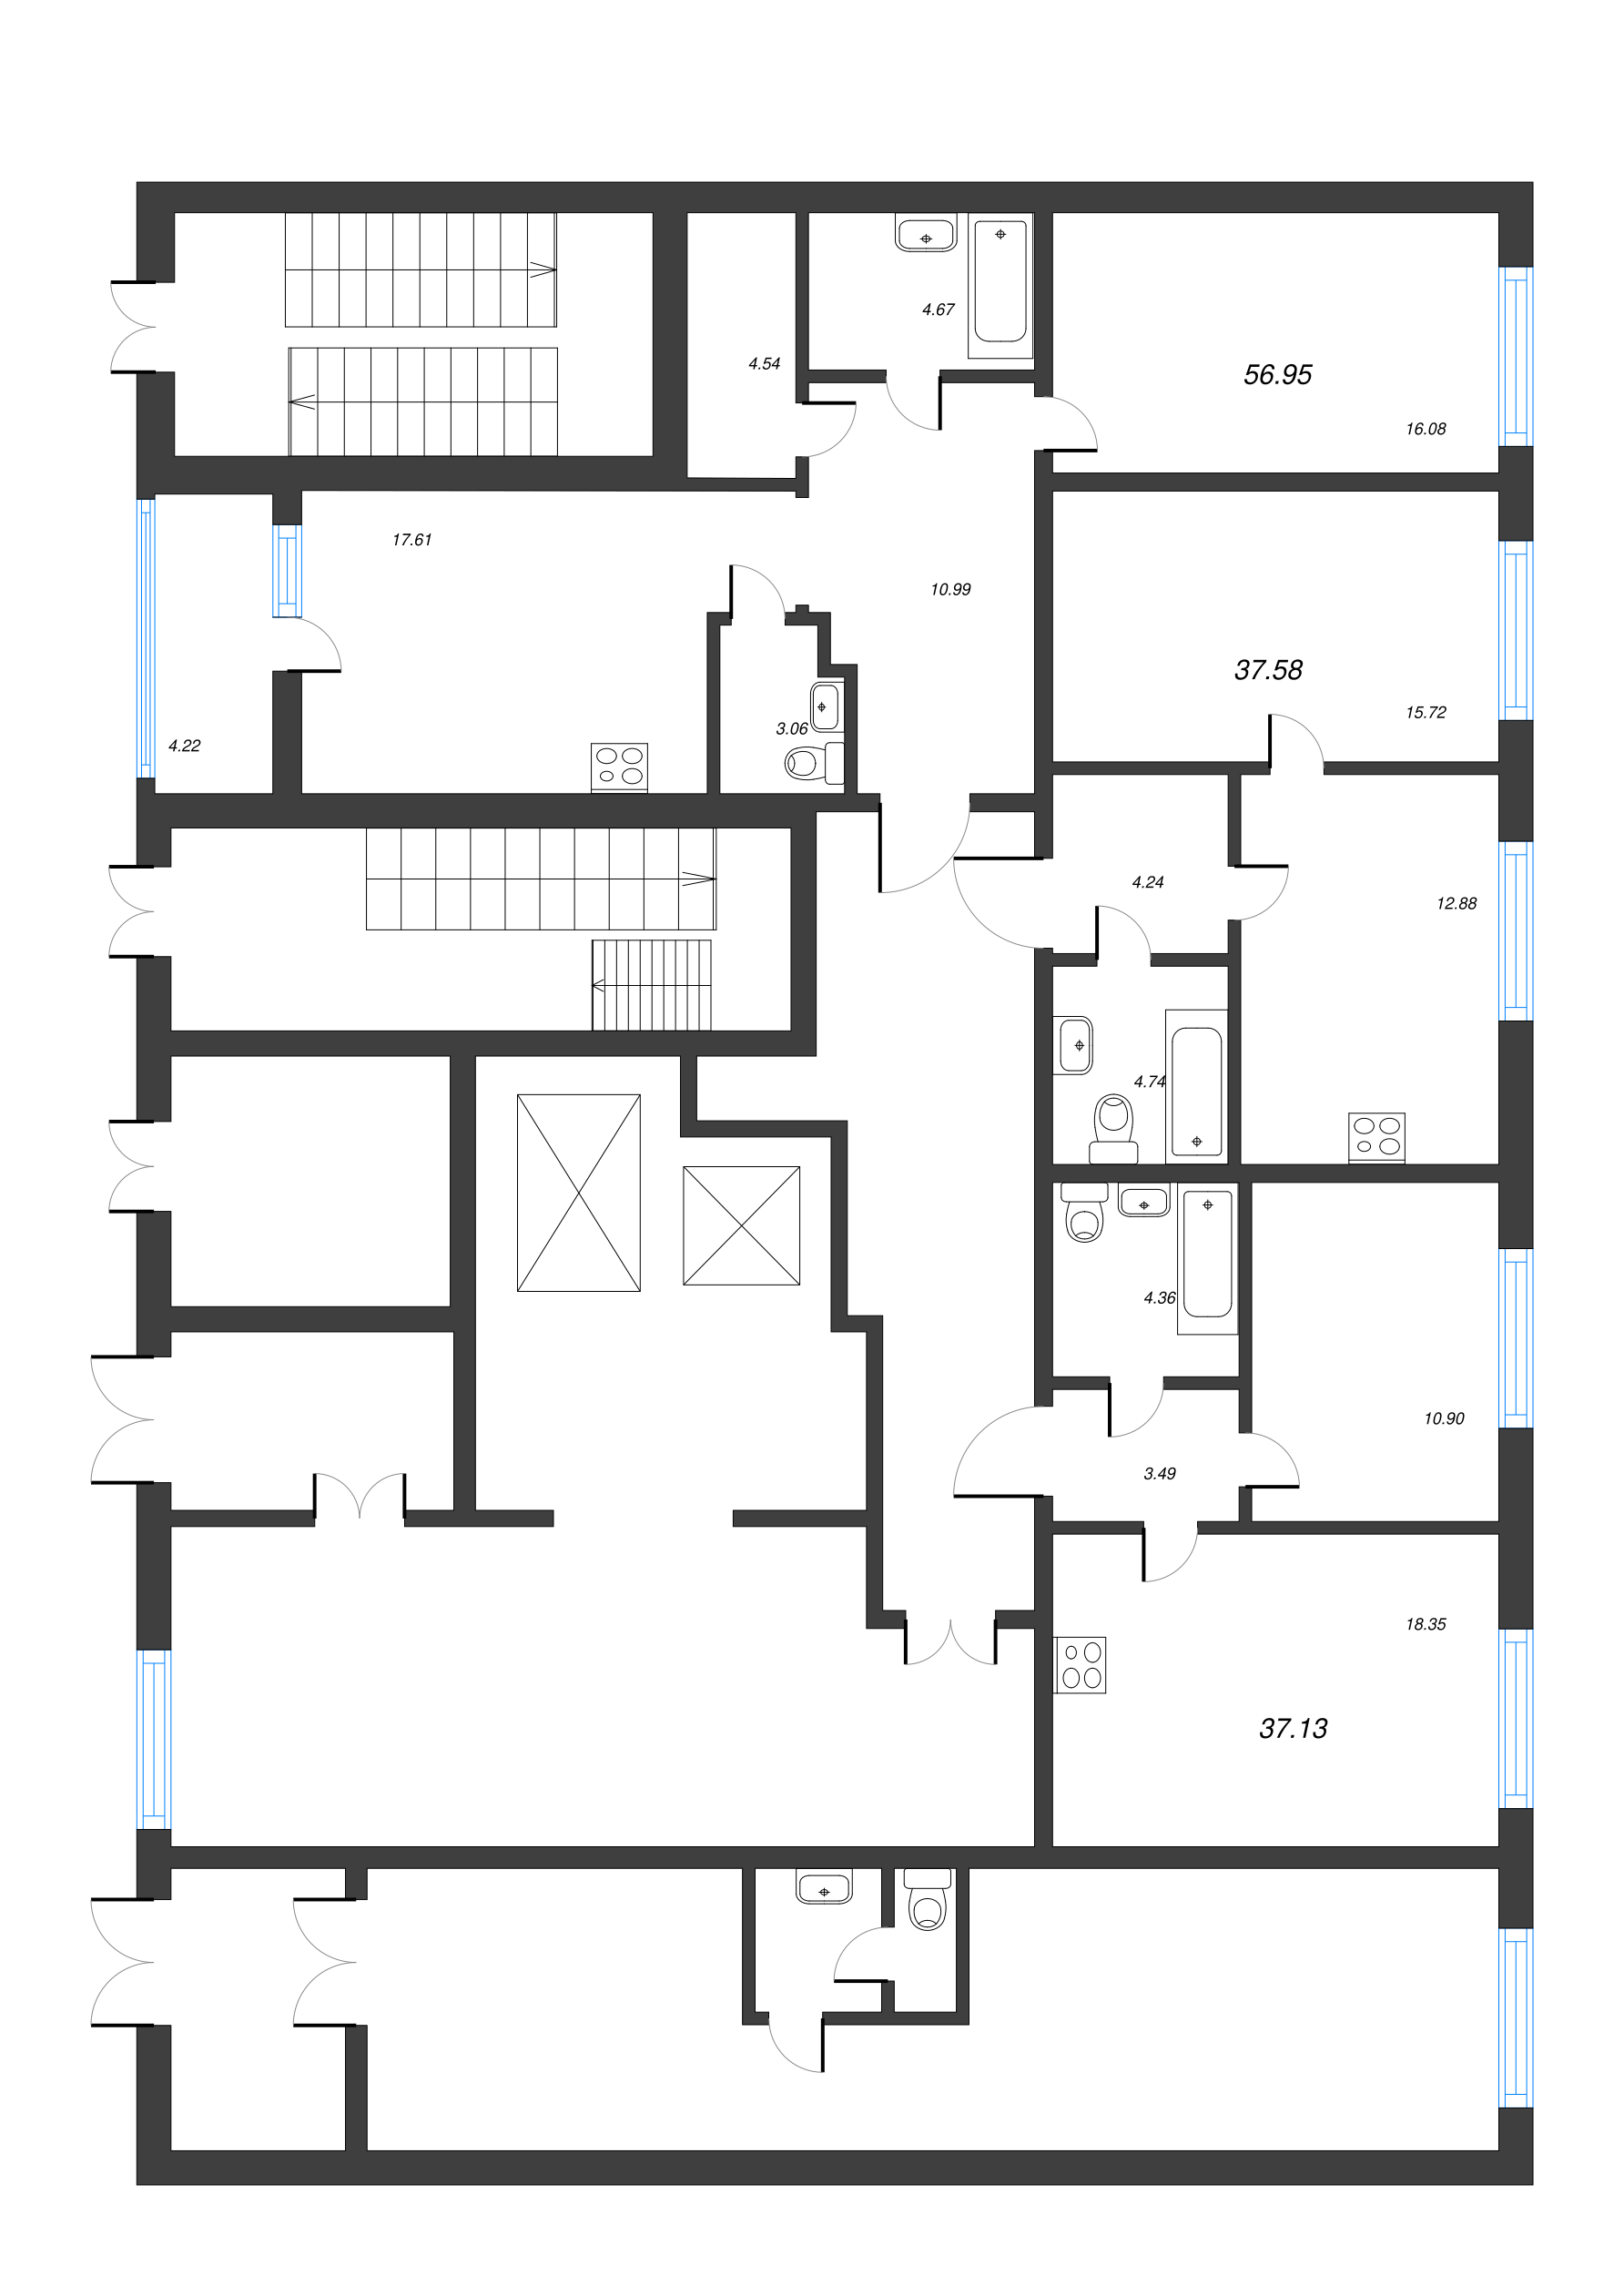 2-комнатная (Евро) квартира, 37.13 м² в ЖК "Чёрная речка" - планировка этажа